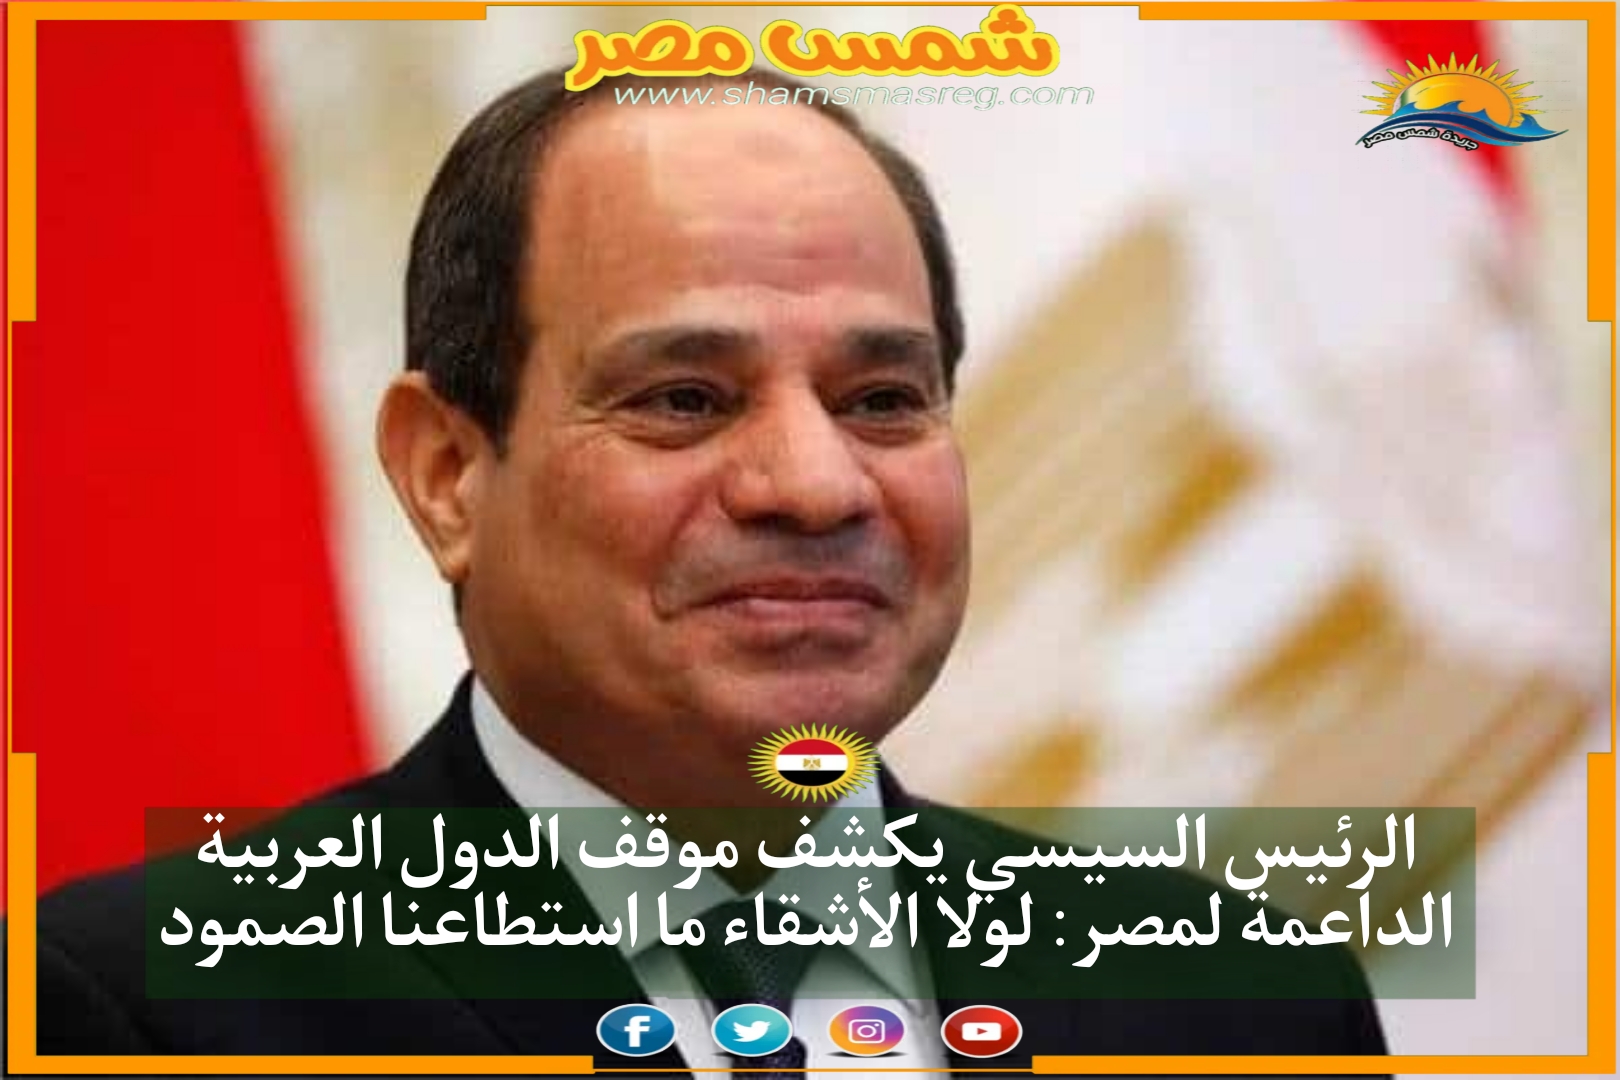 الرئيس السيسي يكشف موقف الدول العربية الداعمة لمصر: لولا الأشقاء ما استطاعنا الصمود